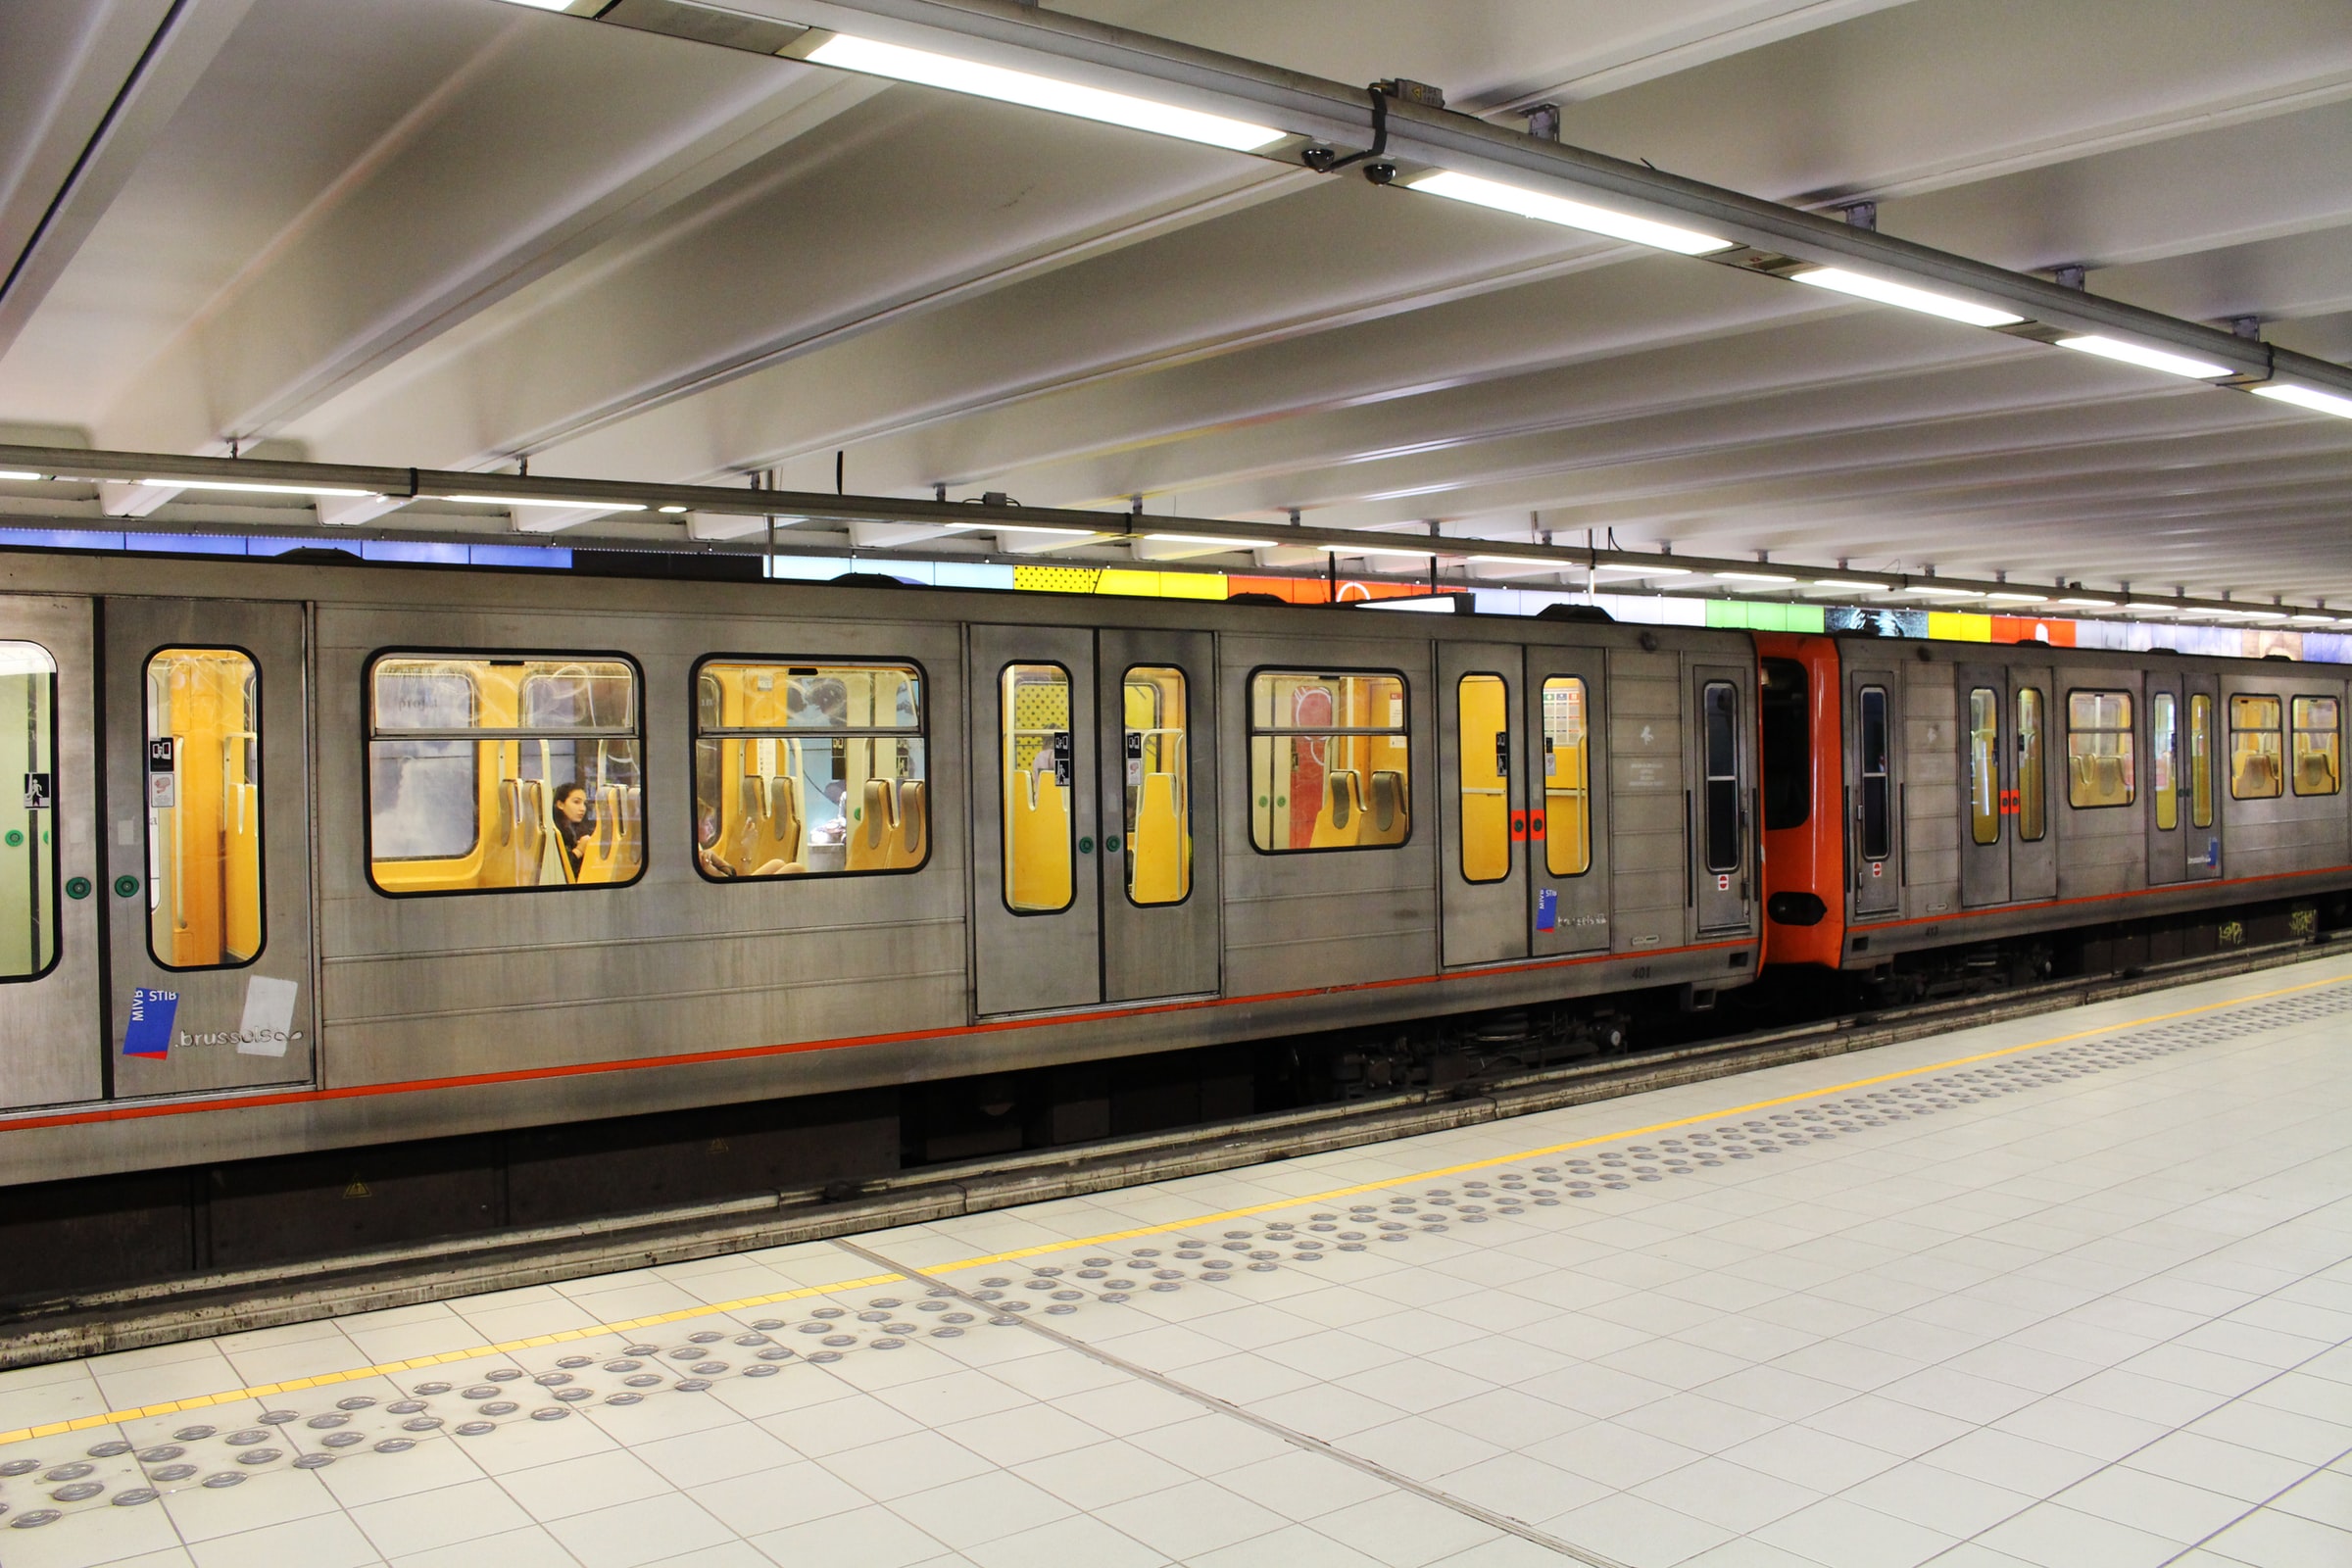 88 personnes en errance dans les stations de métro de Bruxelles ont été aidées dans le cadre de SubLink